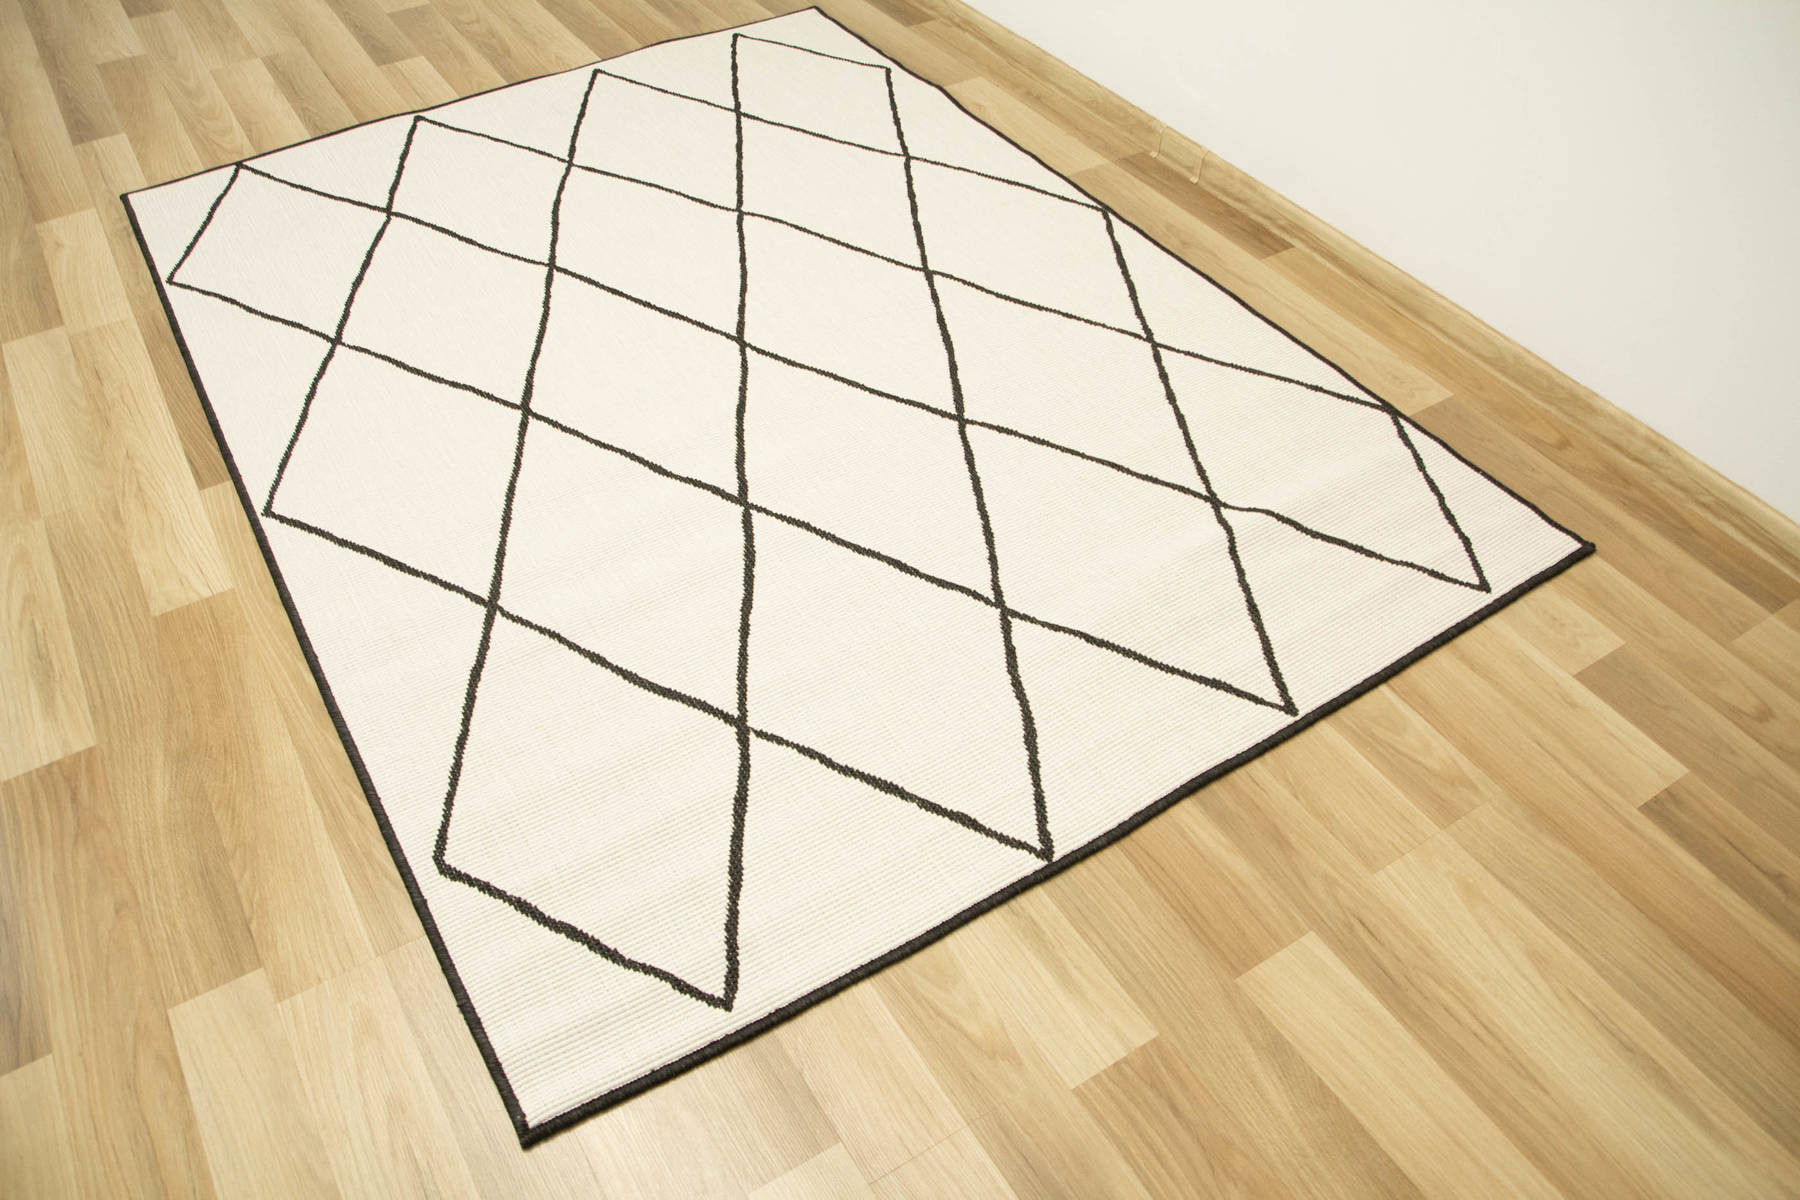 Šňůrkový oboustranný koberec Brussels 205628/10110 antracitový/krémový